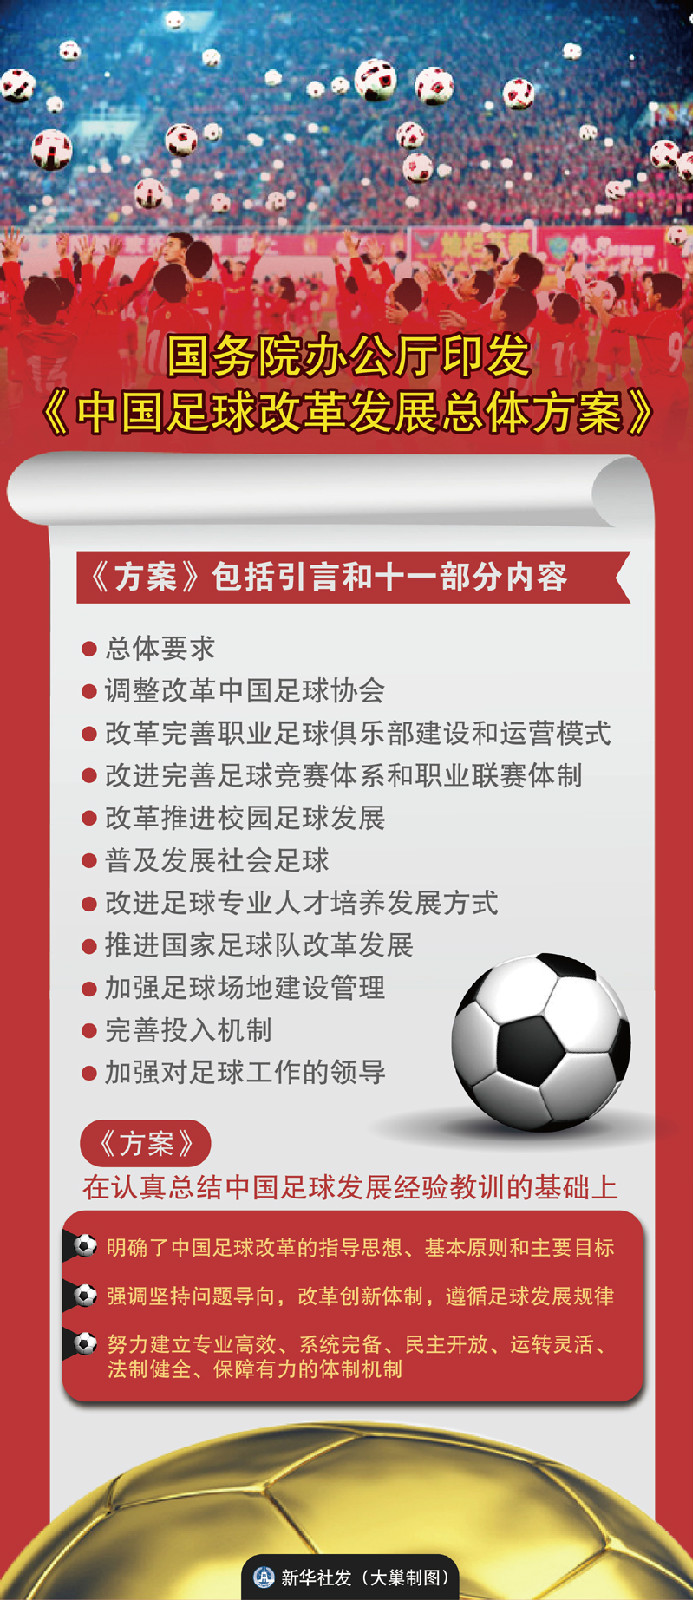 國務院辦公廳關於印發中國足球改革發展總體方案的通知